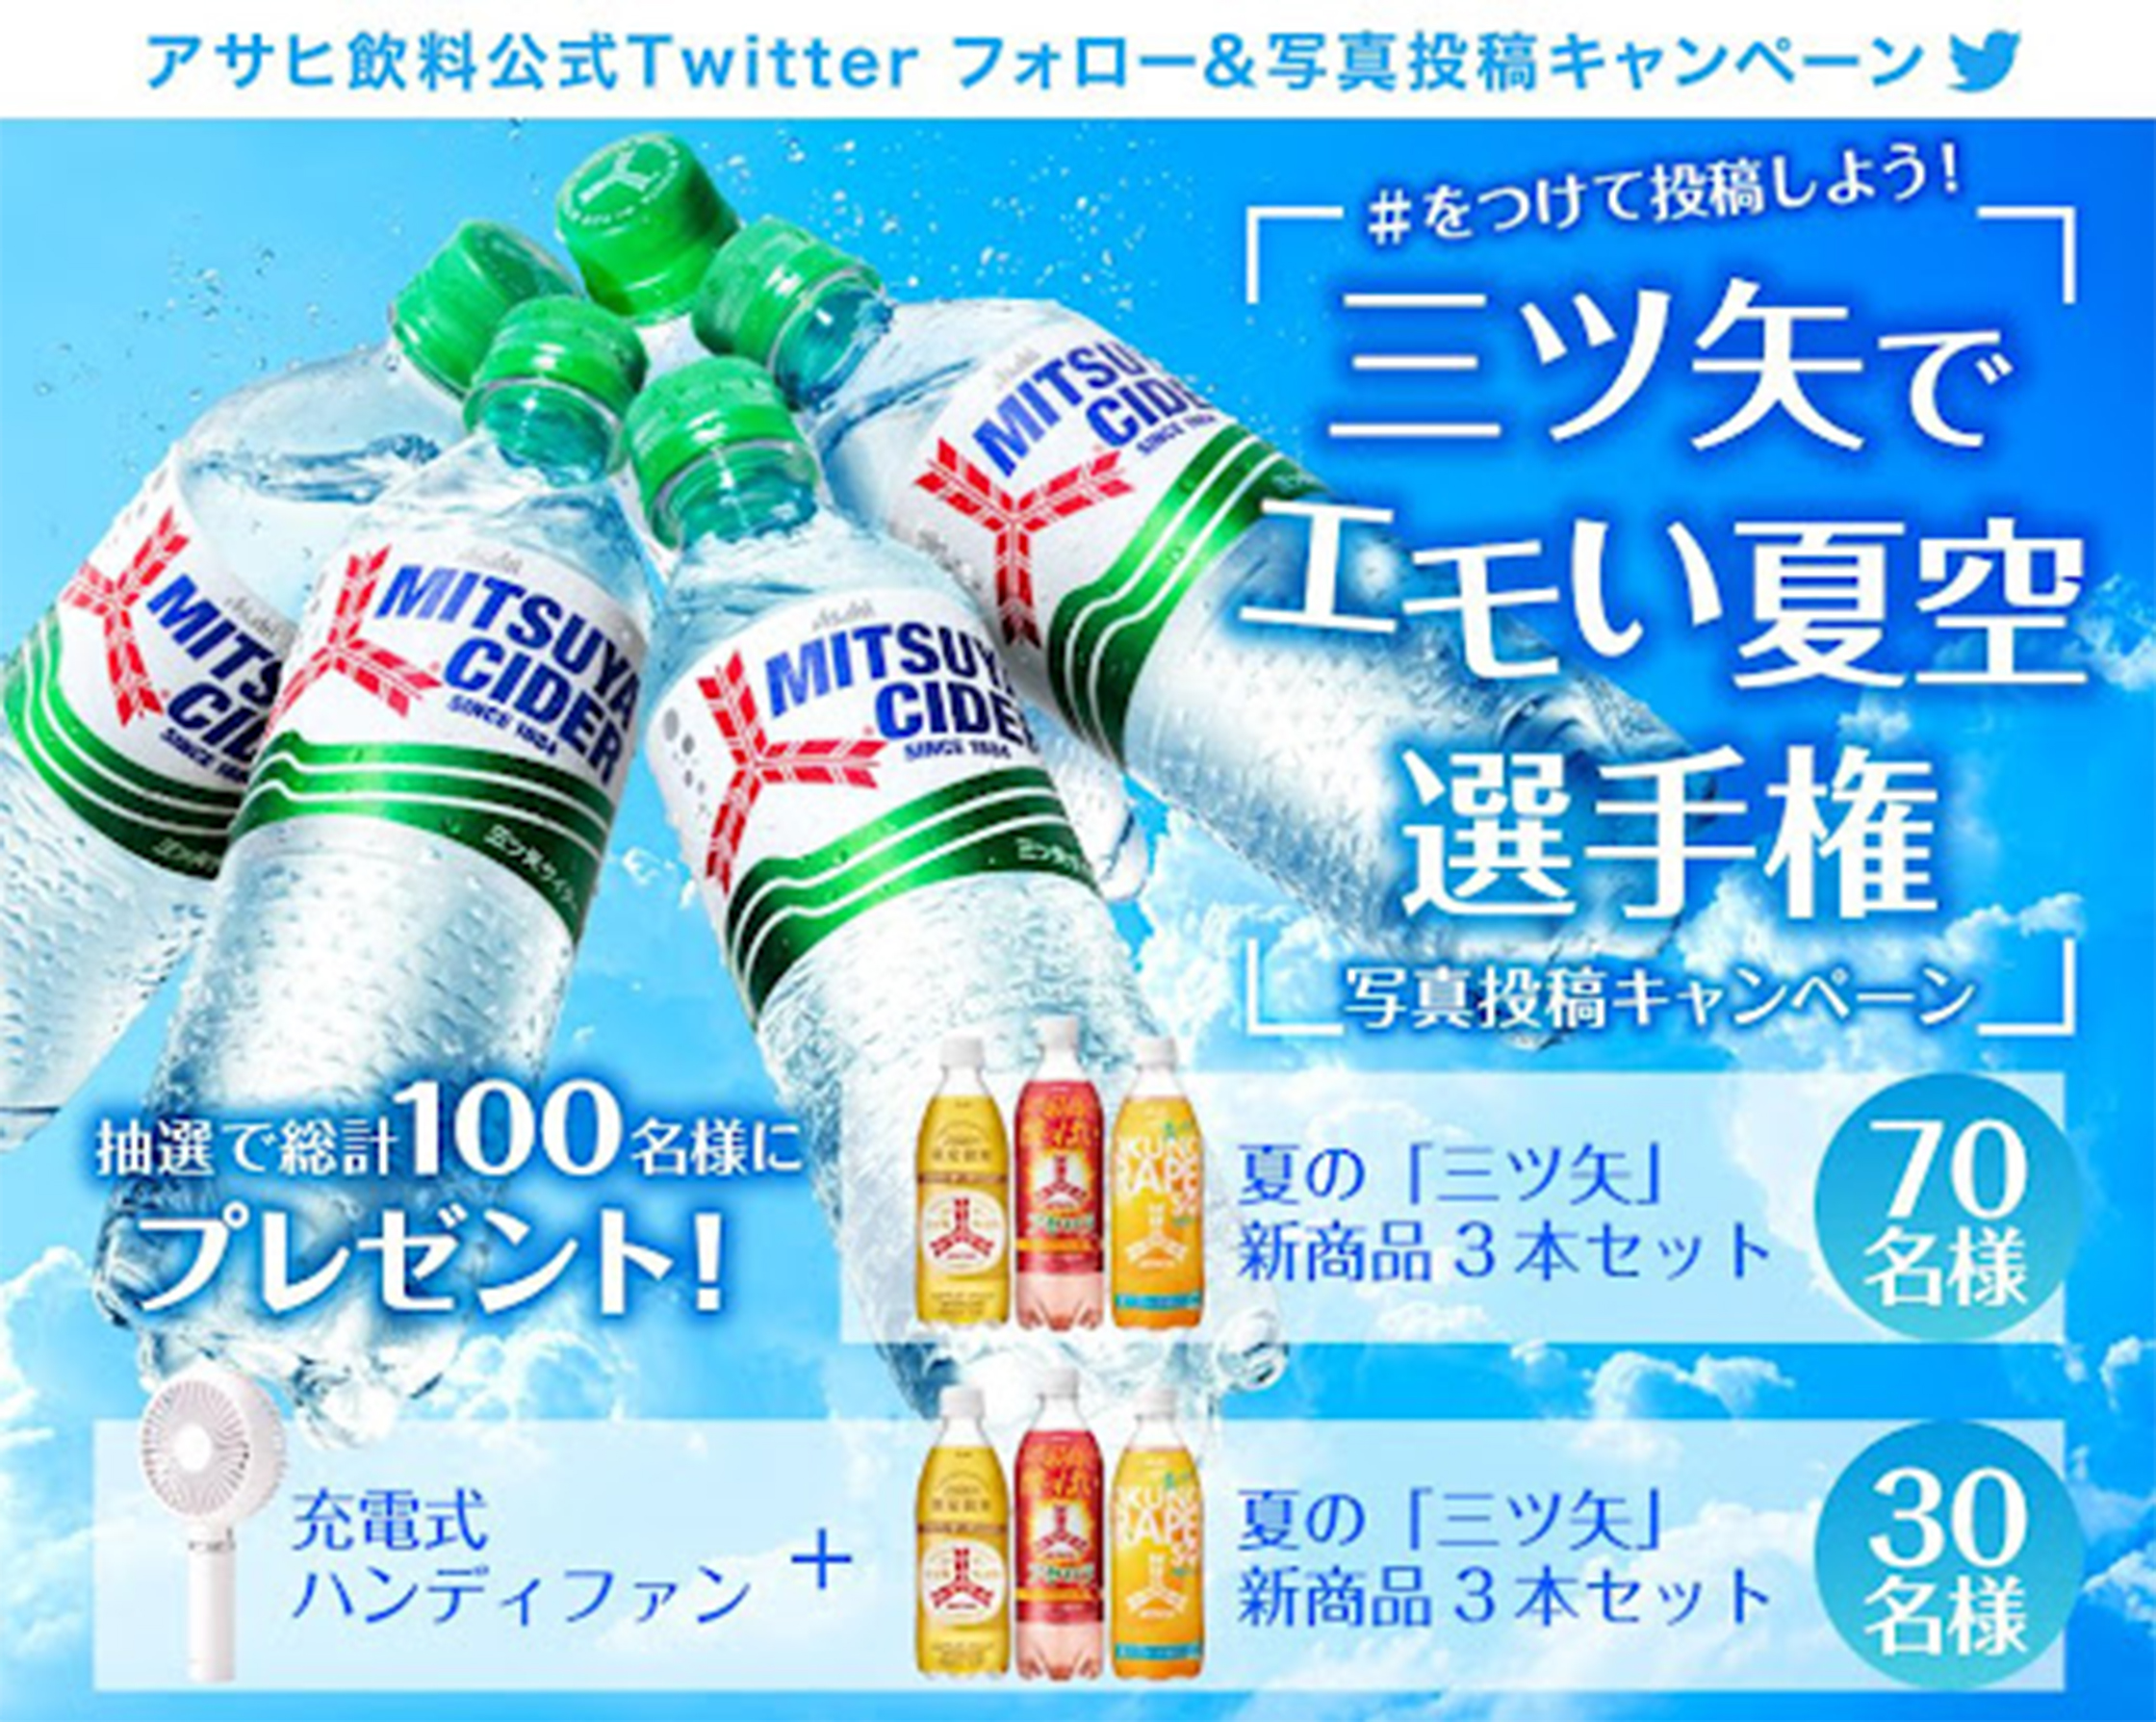 アサヒ飲料公式Twitter　「三ツ矢」でエモい夏空選手権 キャンペーン